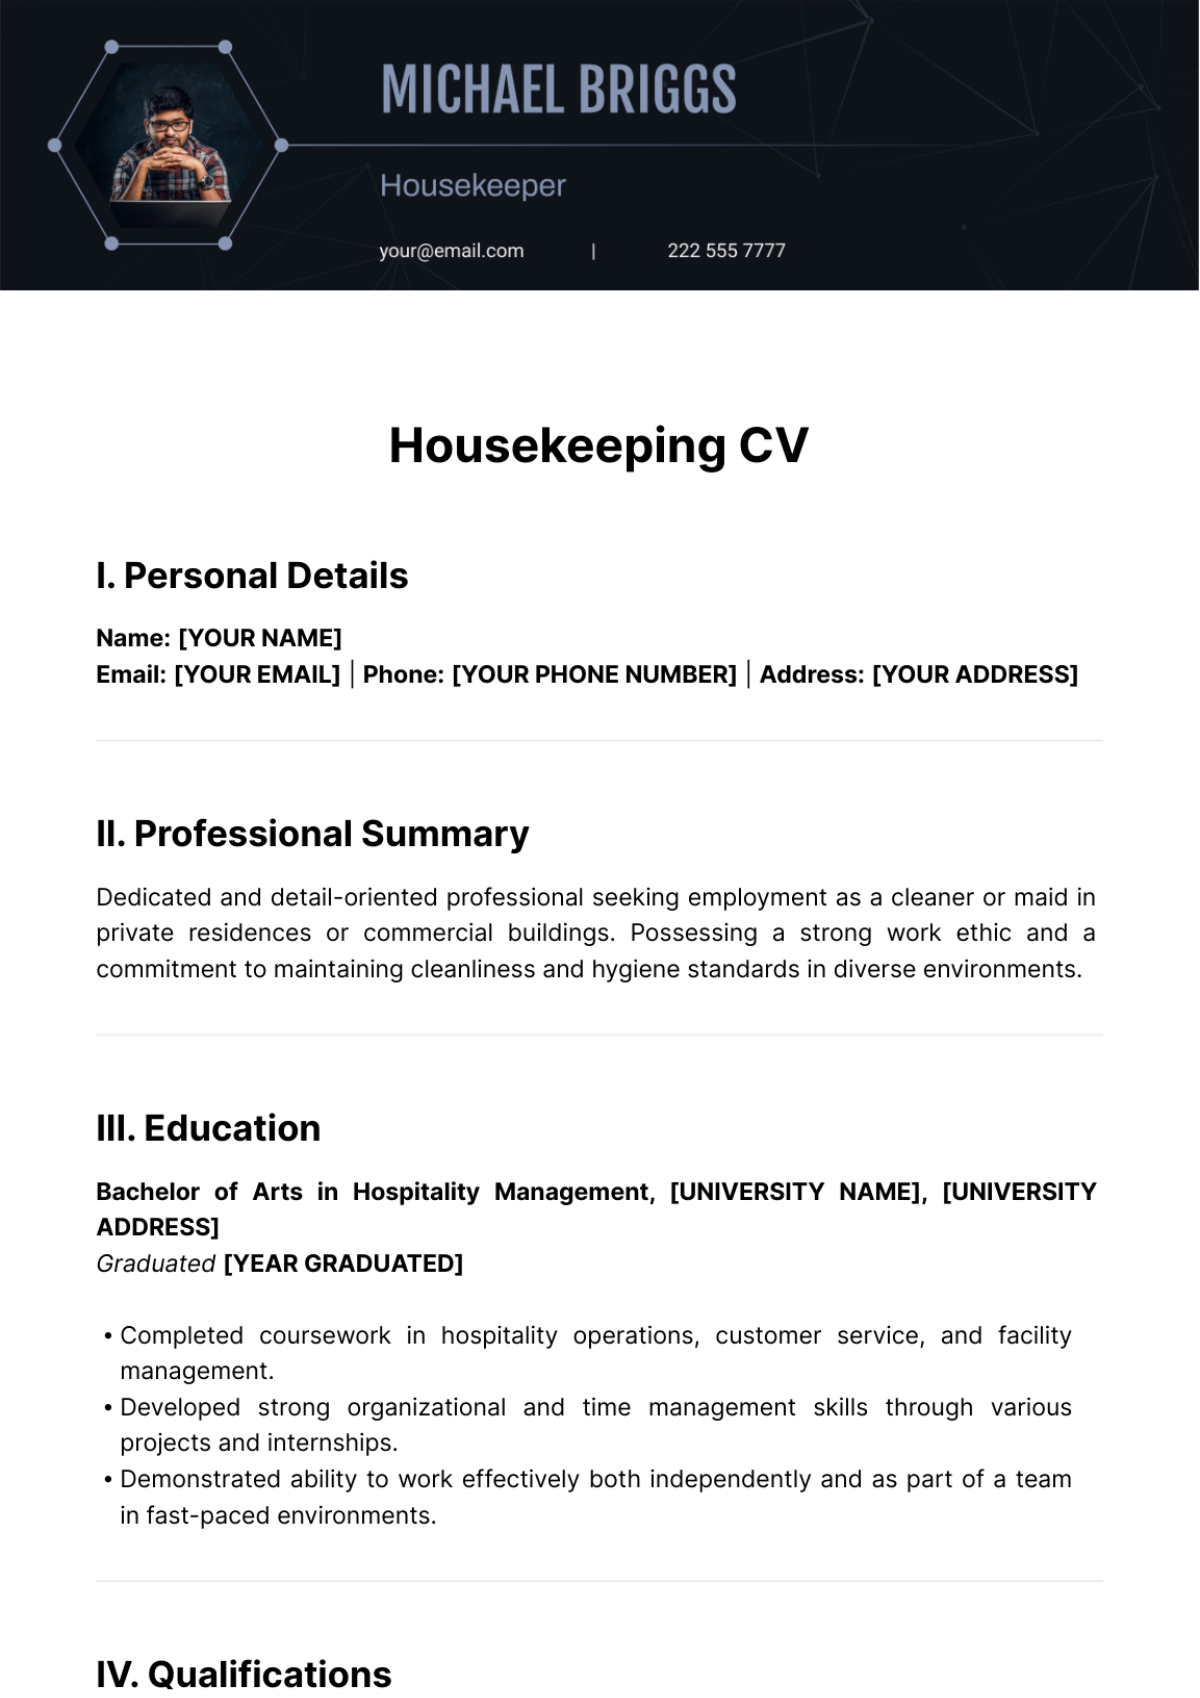 Housekeeping CV Template